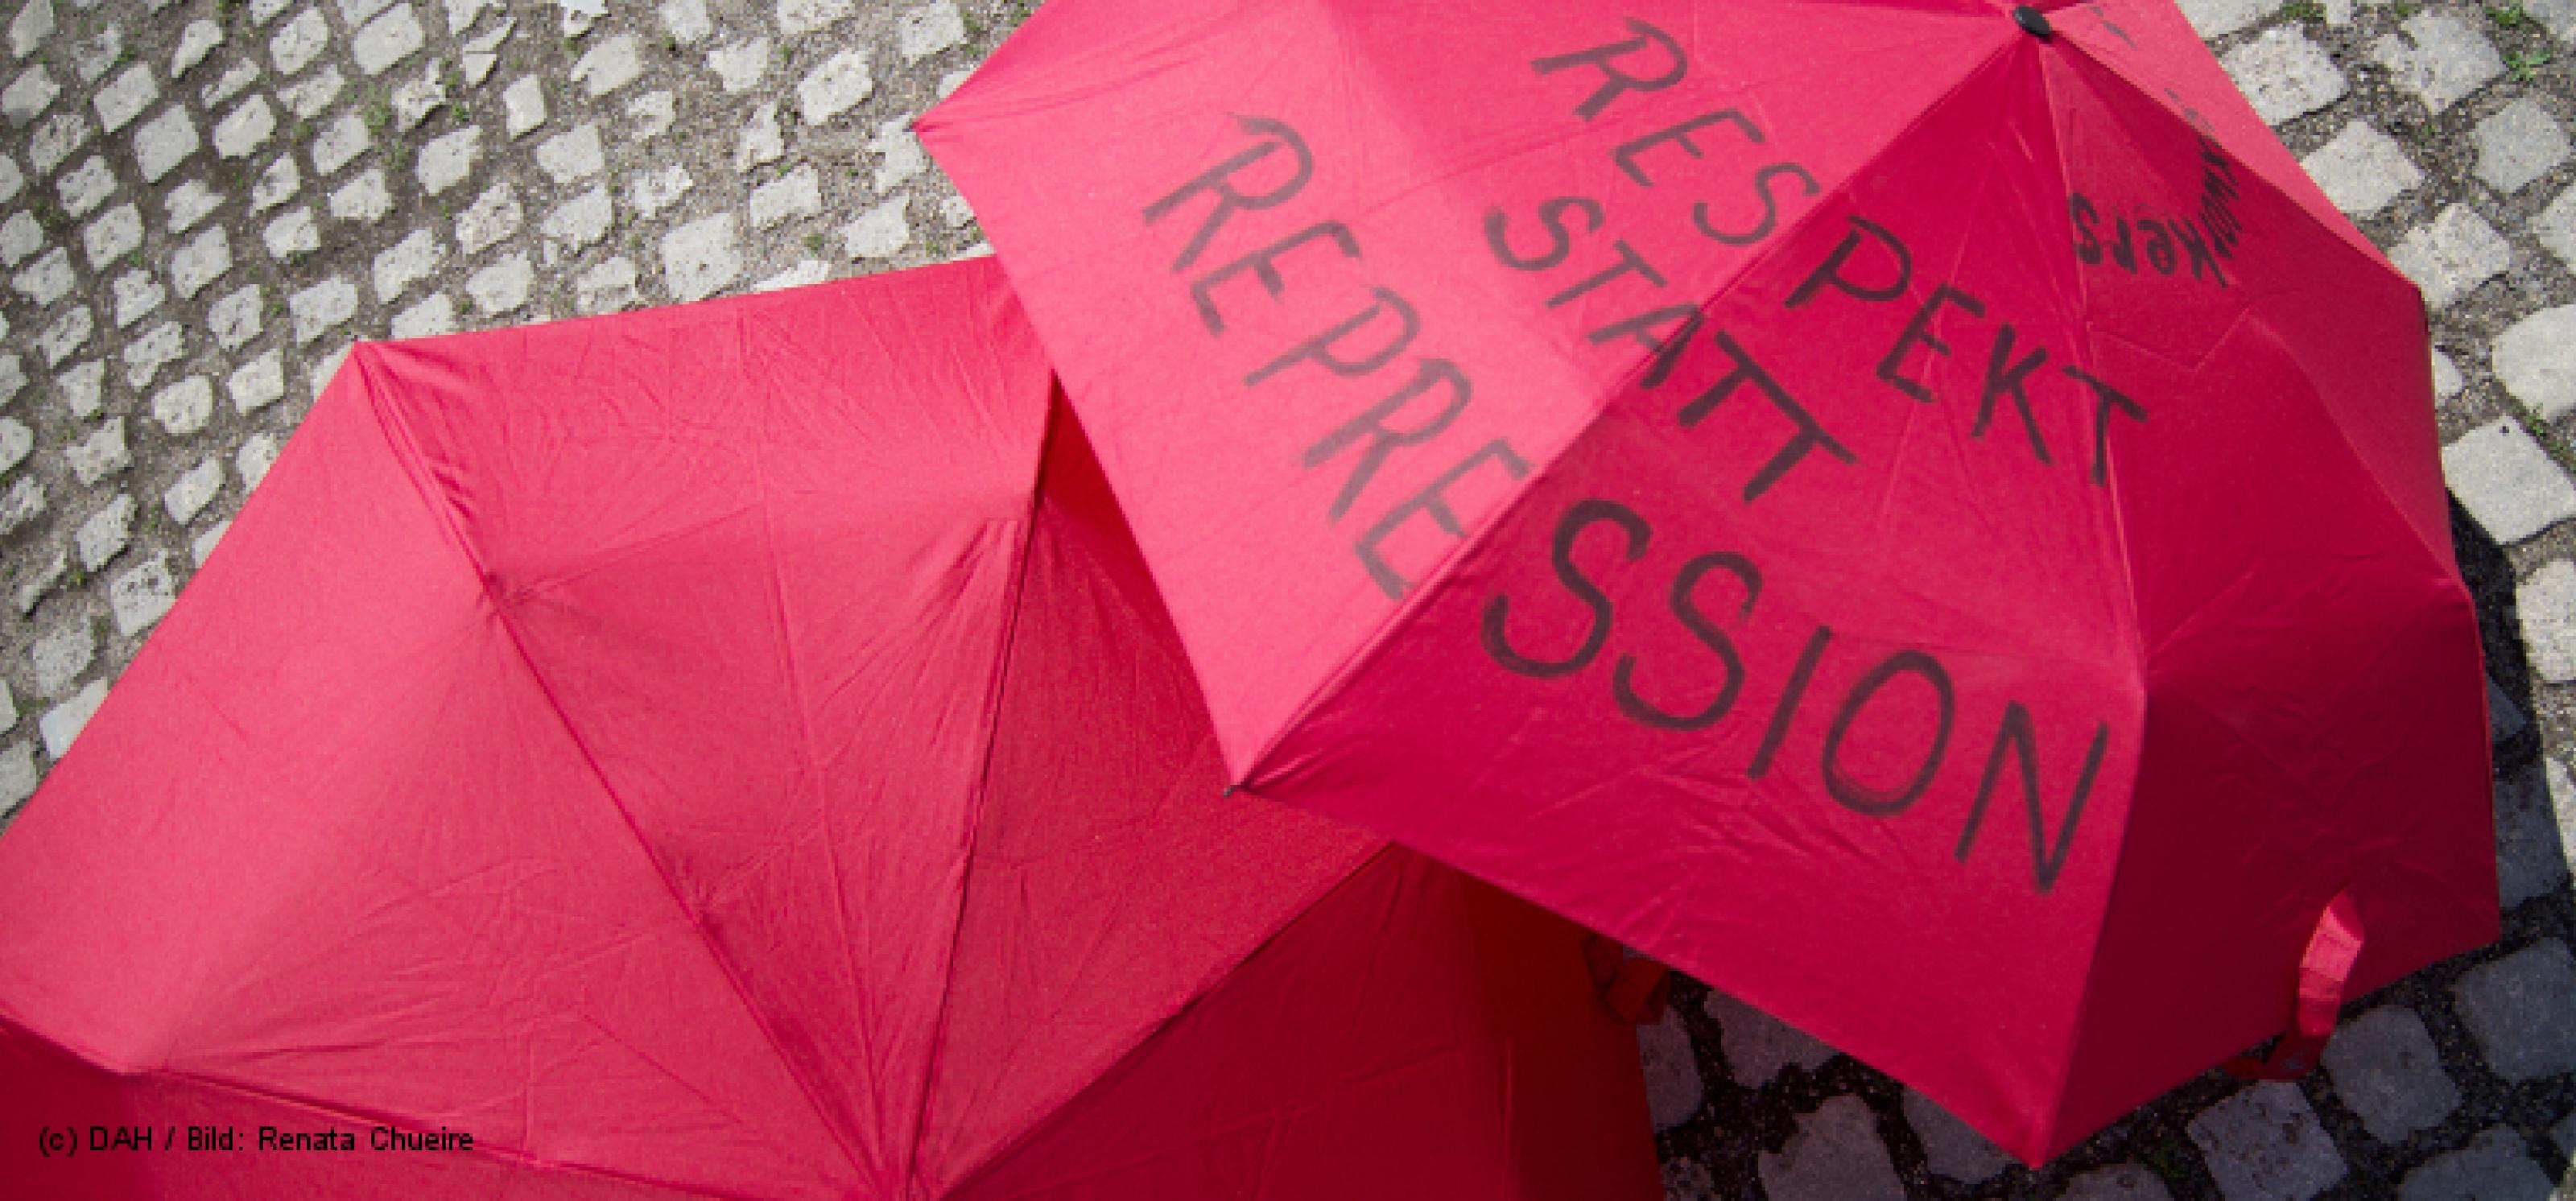 rote Regenschirme zum Protest